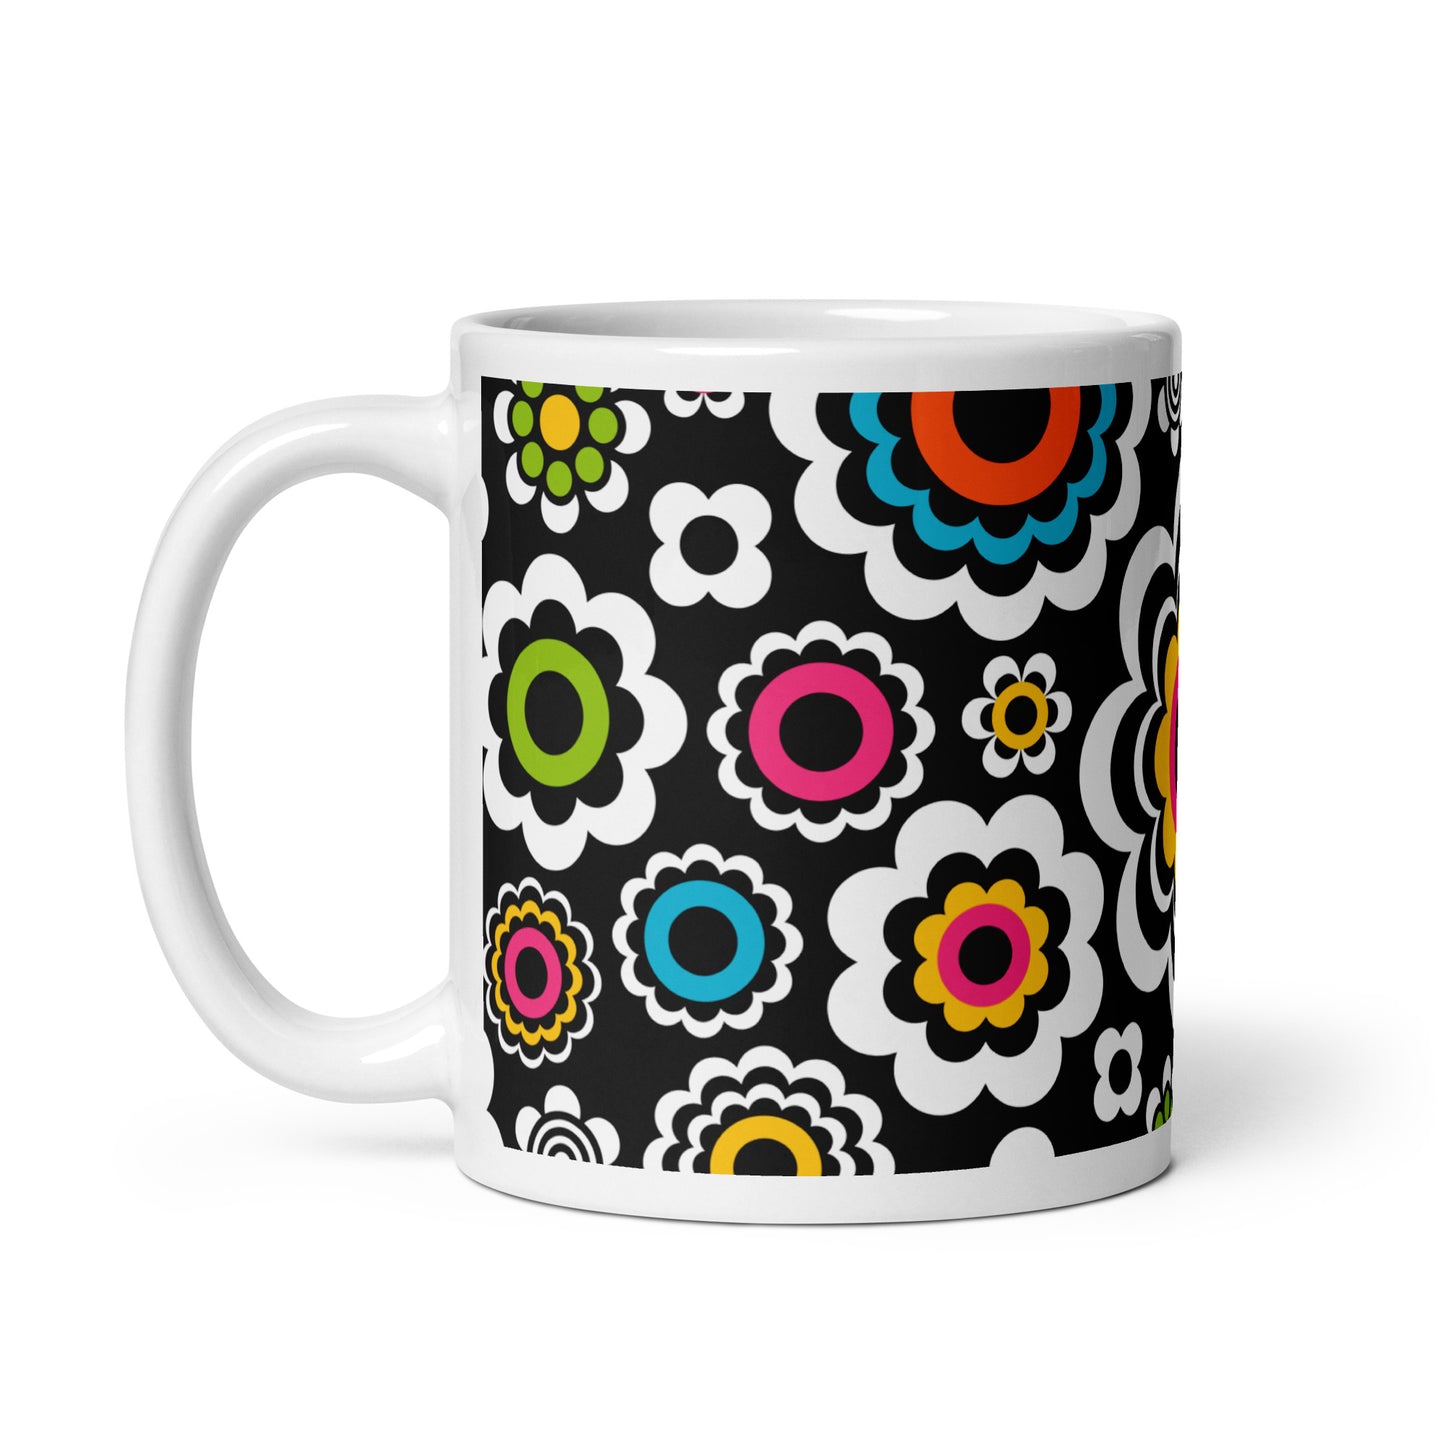 SUGAR BLOOM - Ceramic Mug